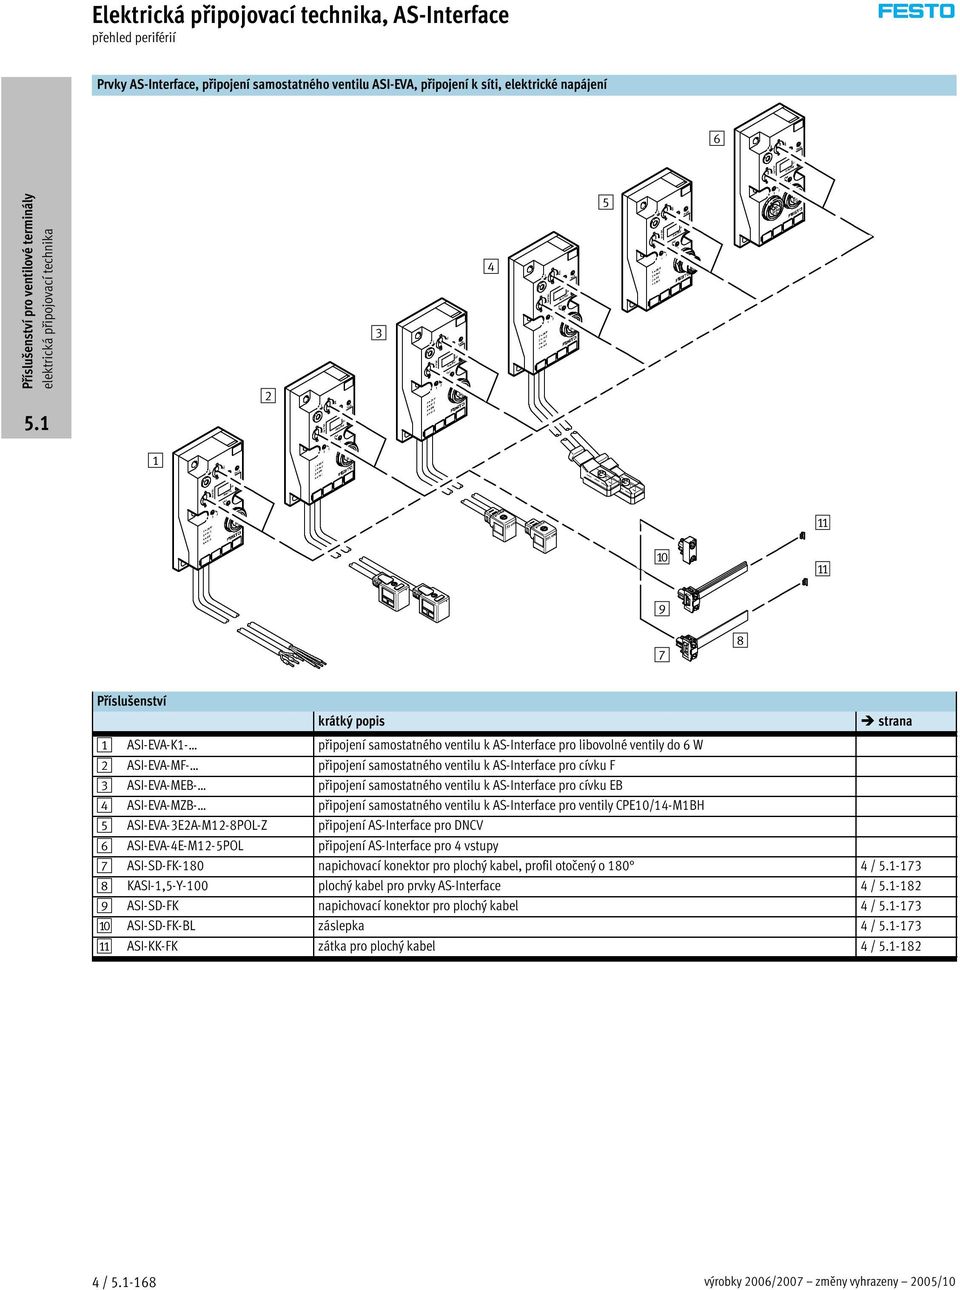 ASI-EVA-MZB- připojení samostatného ventilu k AS-Interface pro ventily CPE10/14-M1BH 5 ASI-EVA-3E2A-M12-8POL-Z připojení AS-Interface pro DNCV 6 ASI-EVA-4E-M12-5POL připojení AS-Interface pro 4